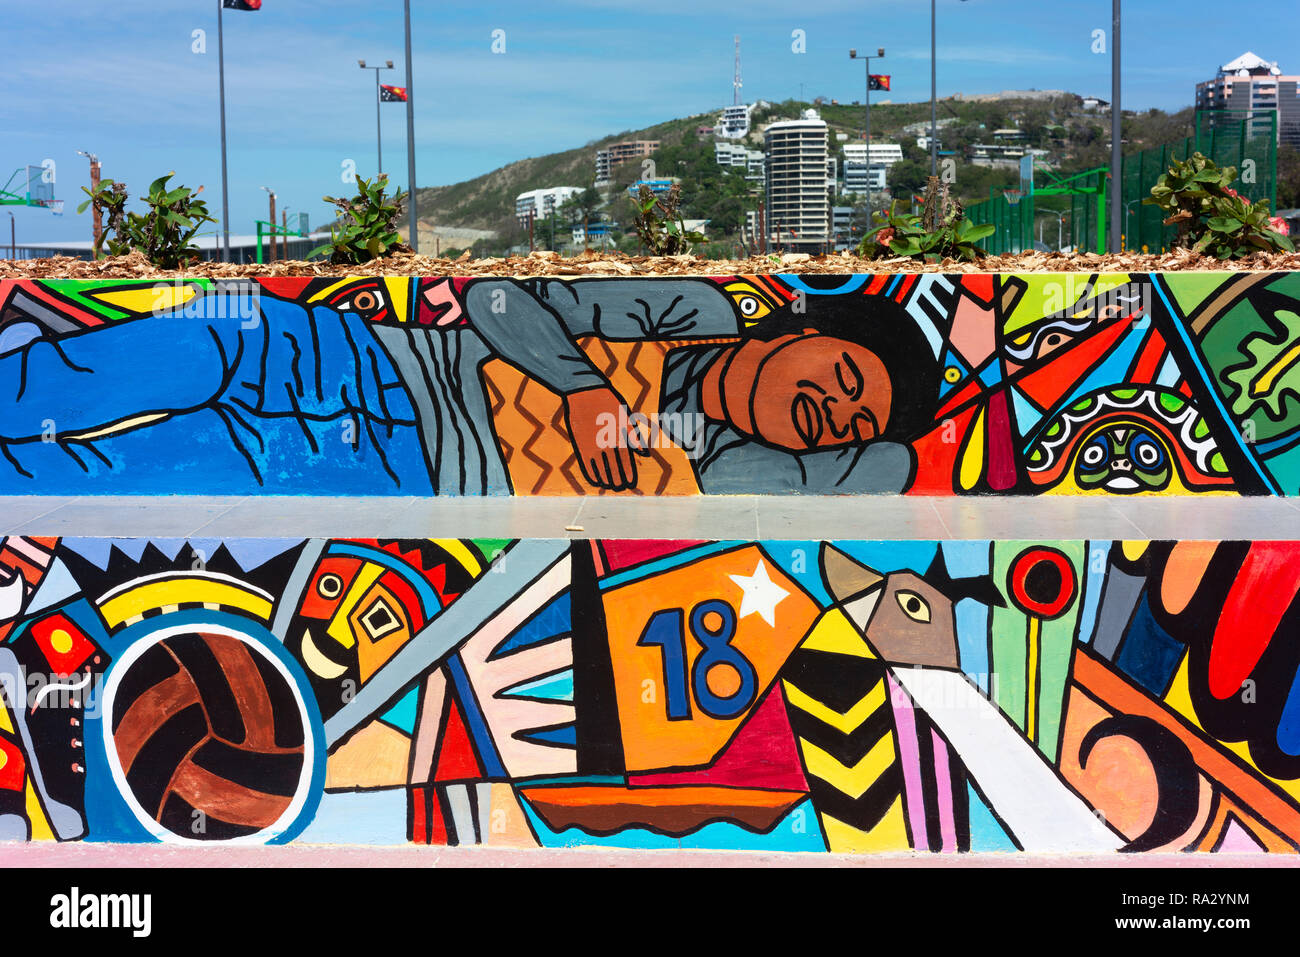 Les terrains de sports et d'autres installations décorées avec art contemporain, récemment rénové, l'ela plage à Port Moresby. Banque D'Images